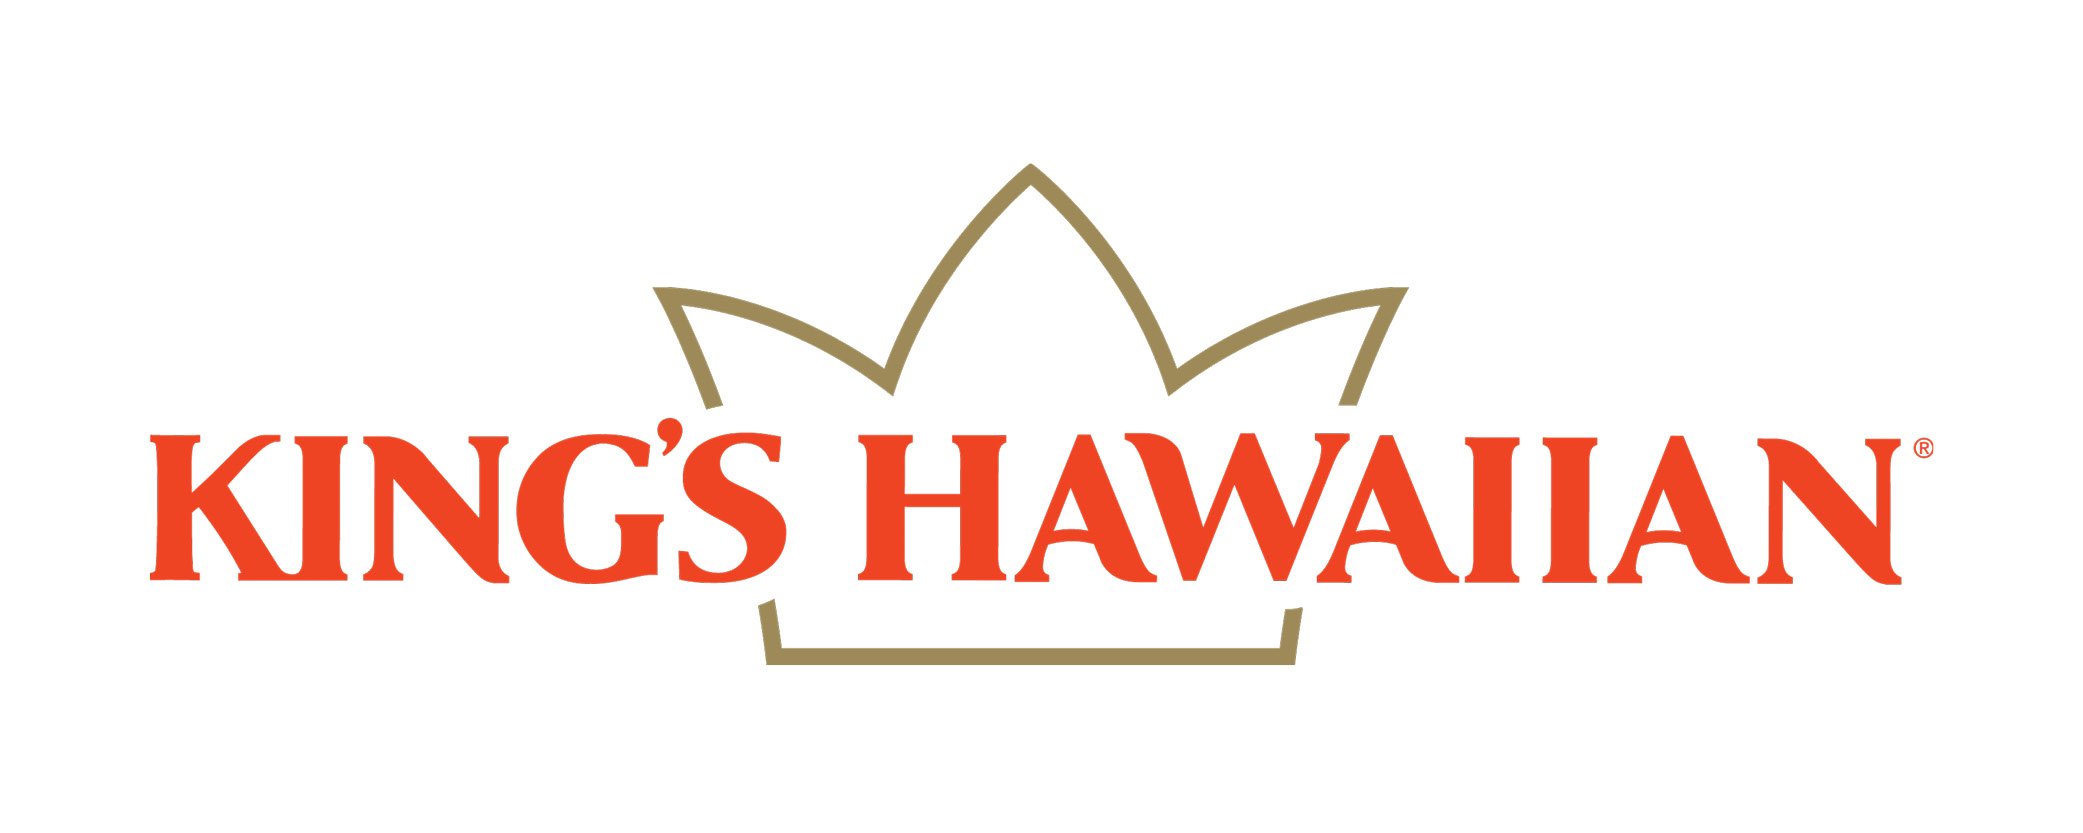 King’s Hawaiian.jpg